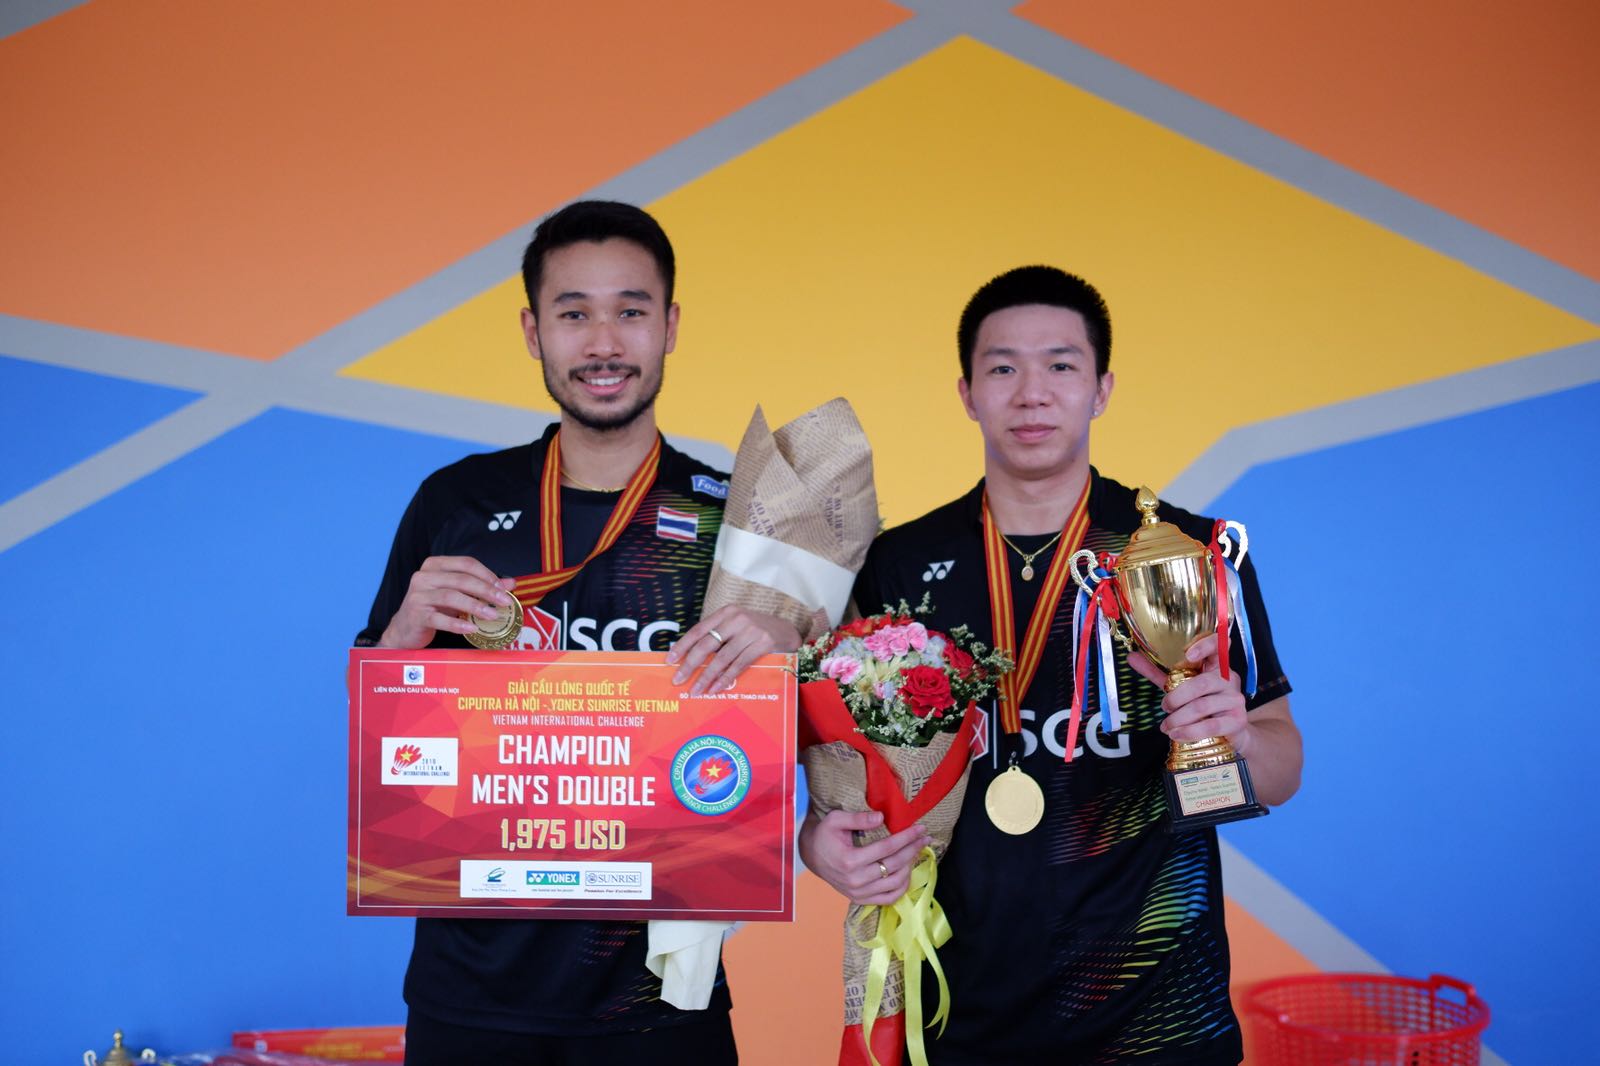 มณีพงศ์-นันทกานต์ คว้าแชมป์ชายคู่ Vietnam International Challenge 2018